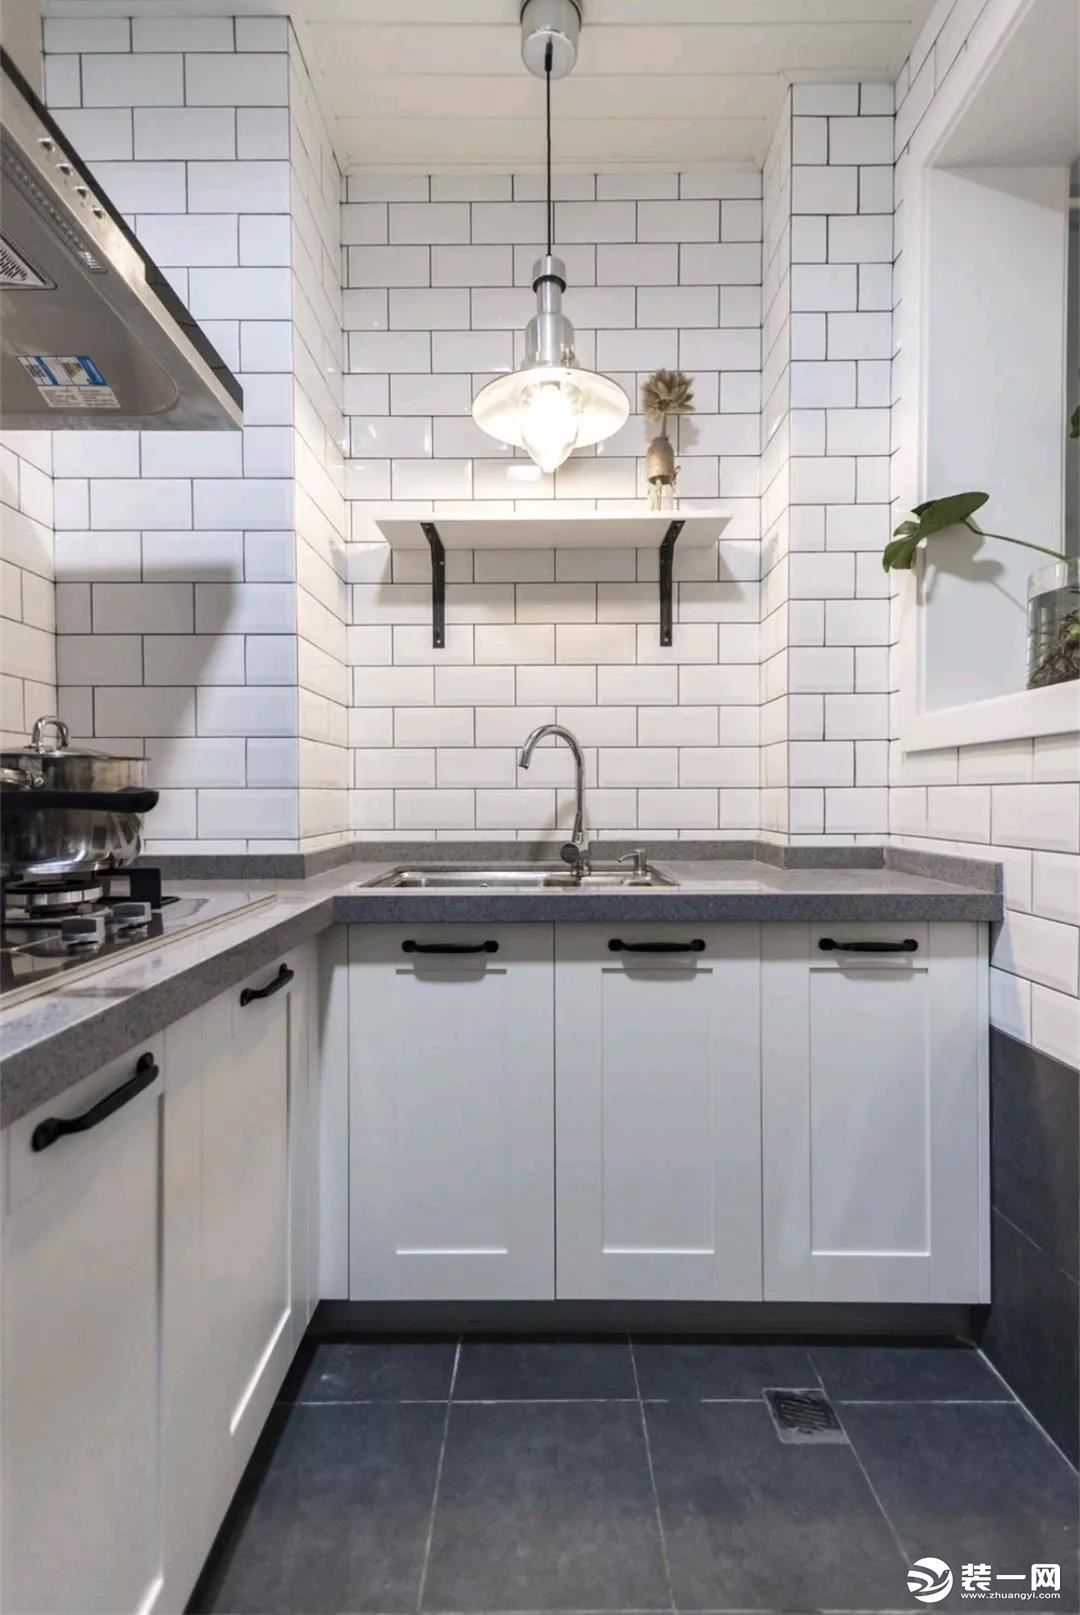 厨房处选择了最近最为流行的长方形小白砖设计，搭配浅灰色的地砖，打造出一个时尚、有格调的厨房空间。